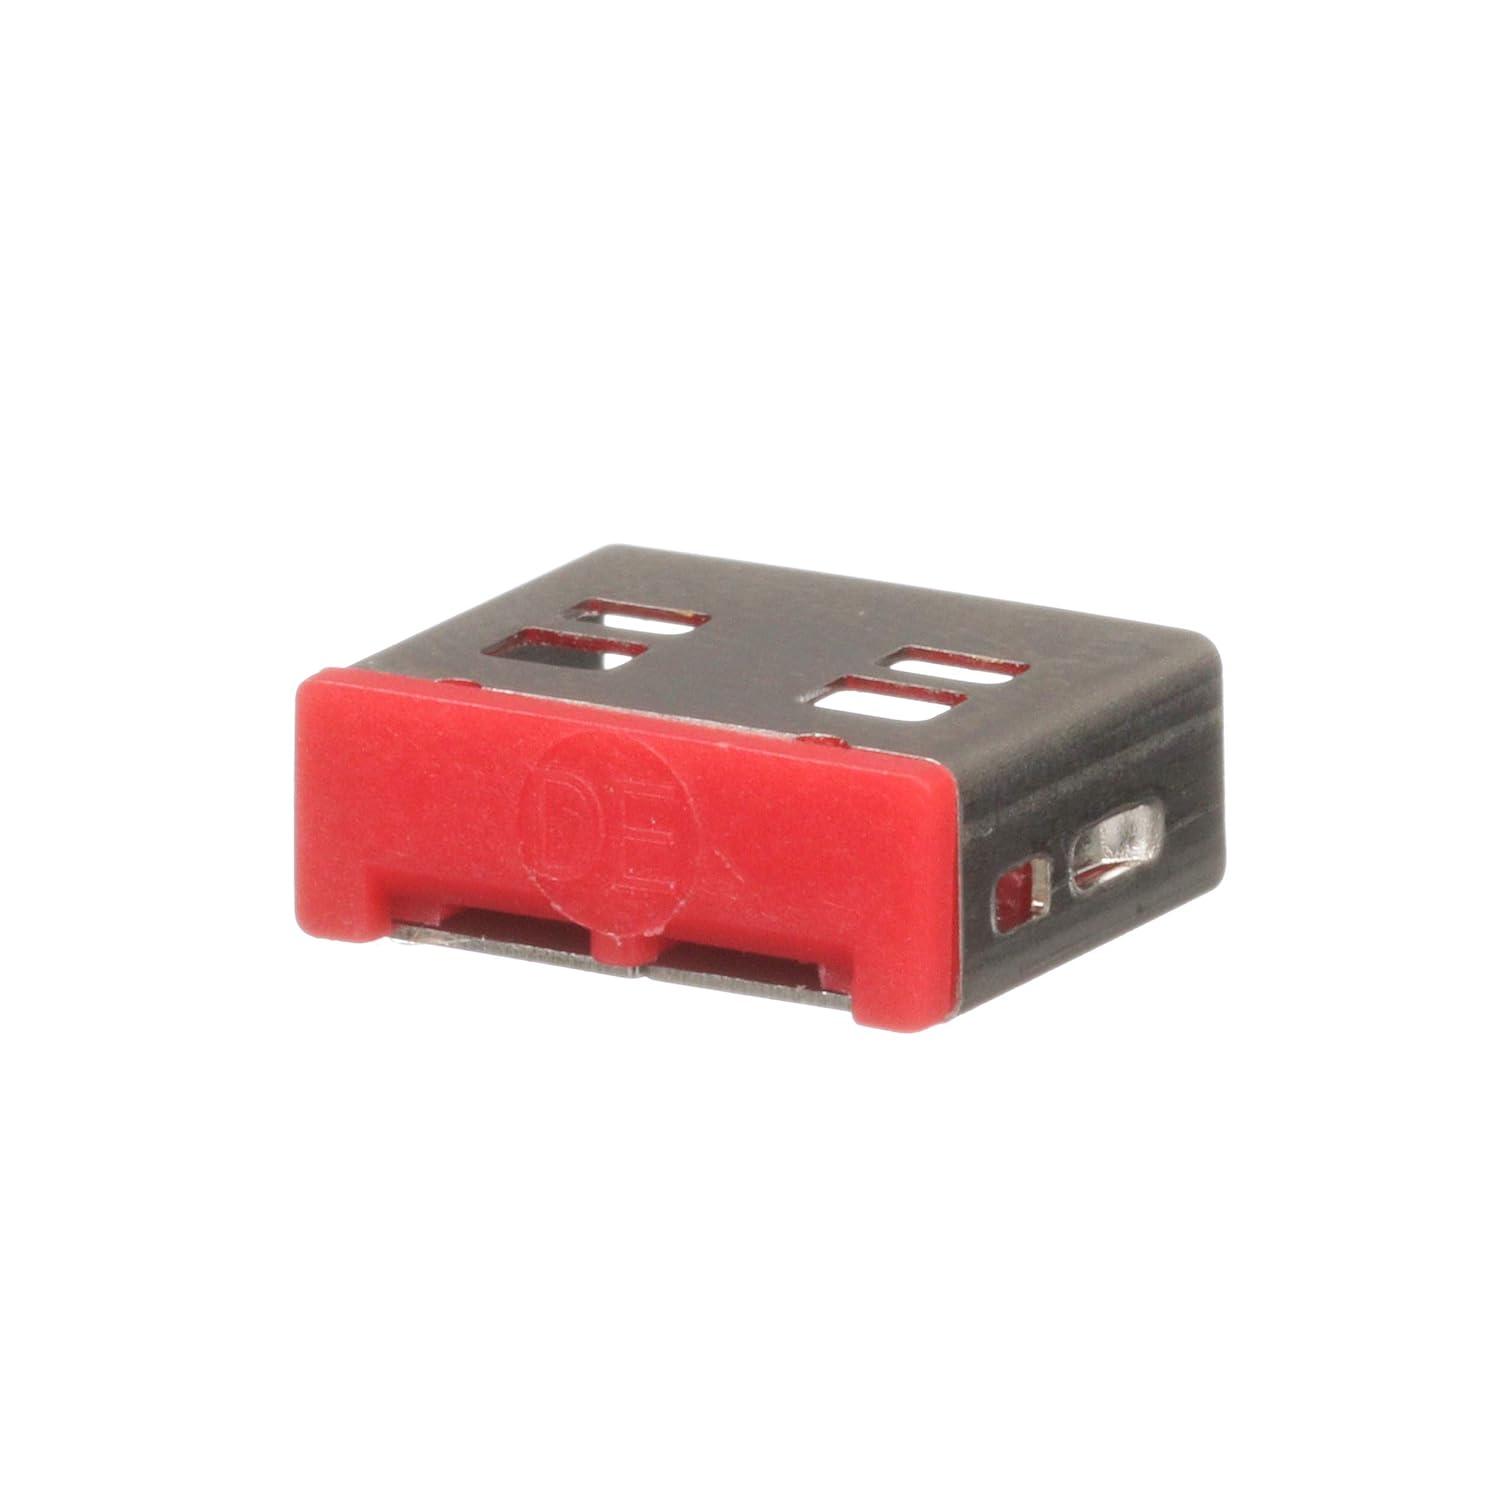  phECbg SmartkeeperV[Y USB Type-Ap ZLeBubN  5 (SKUSBAV 6260)